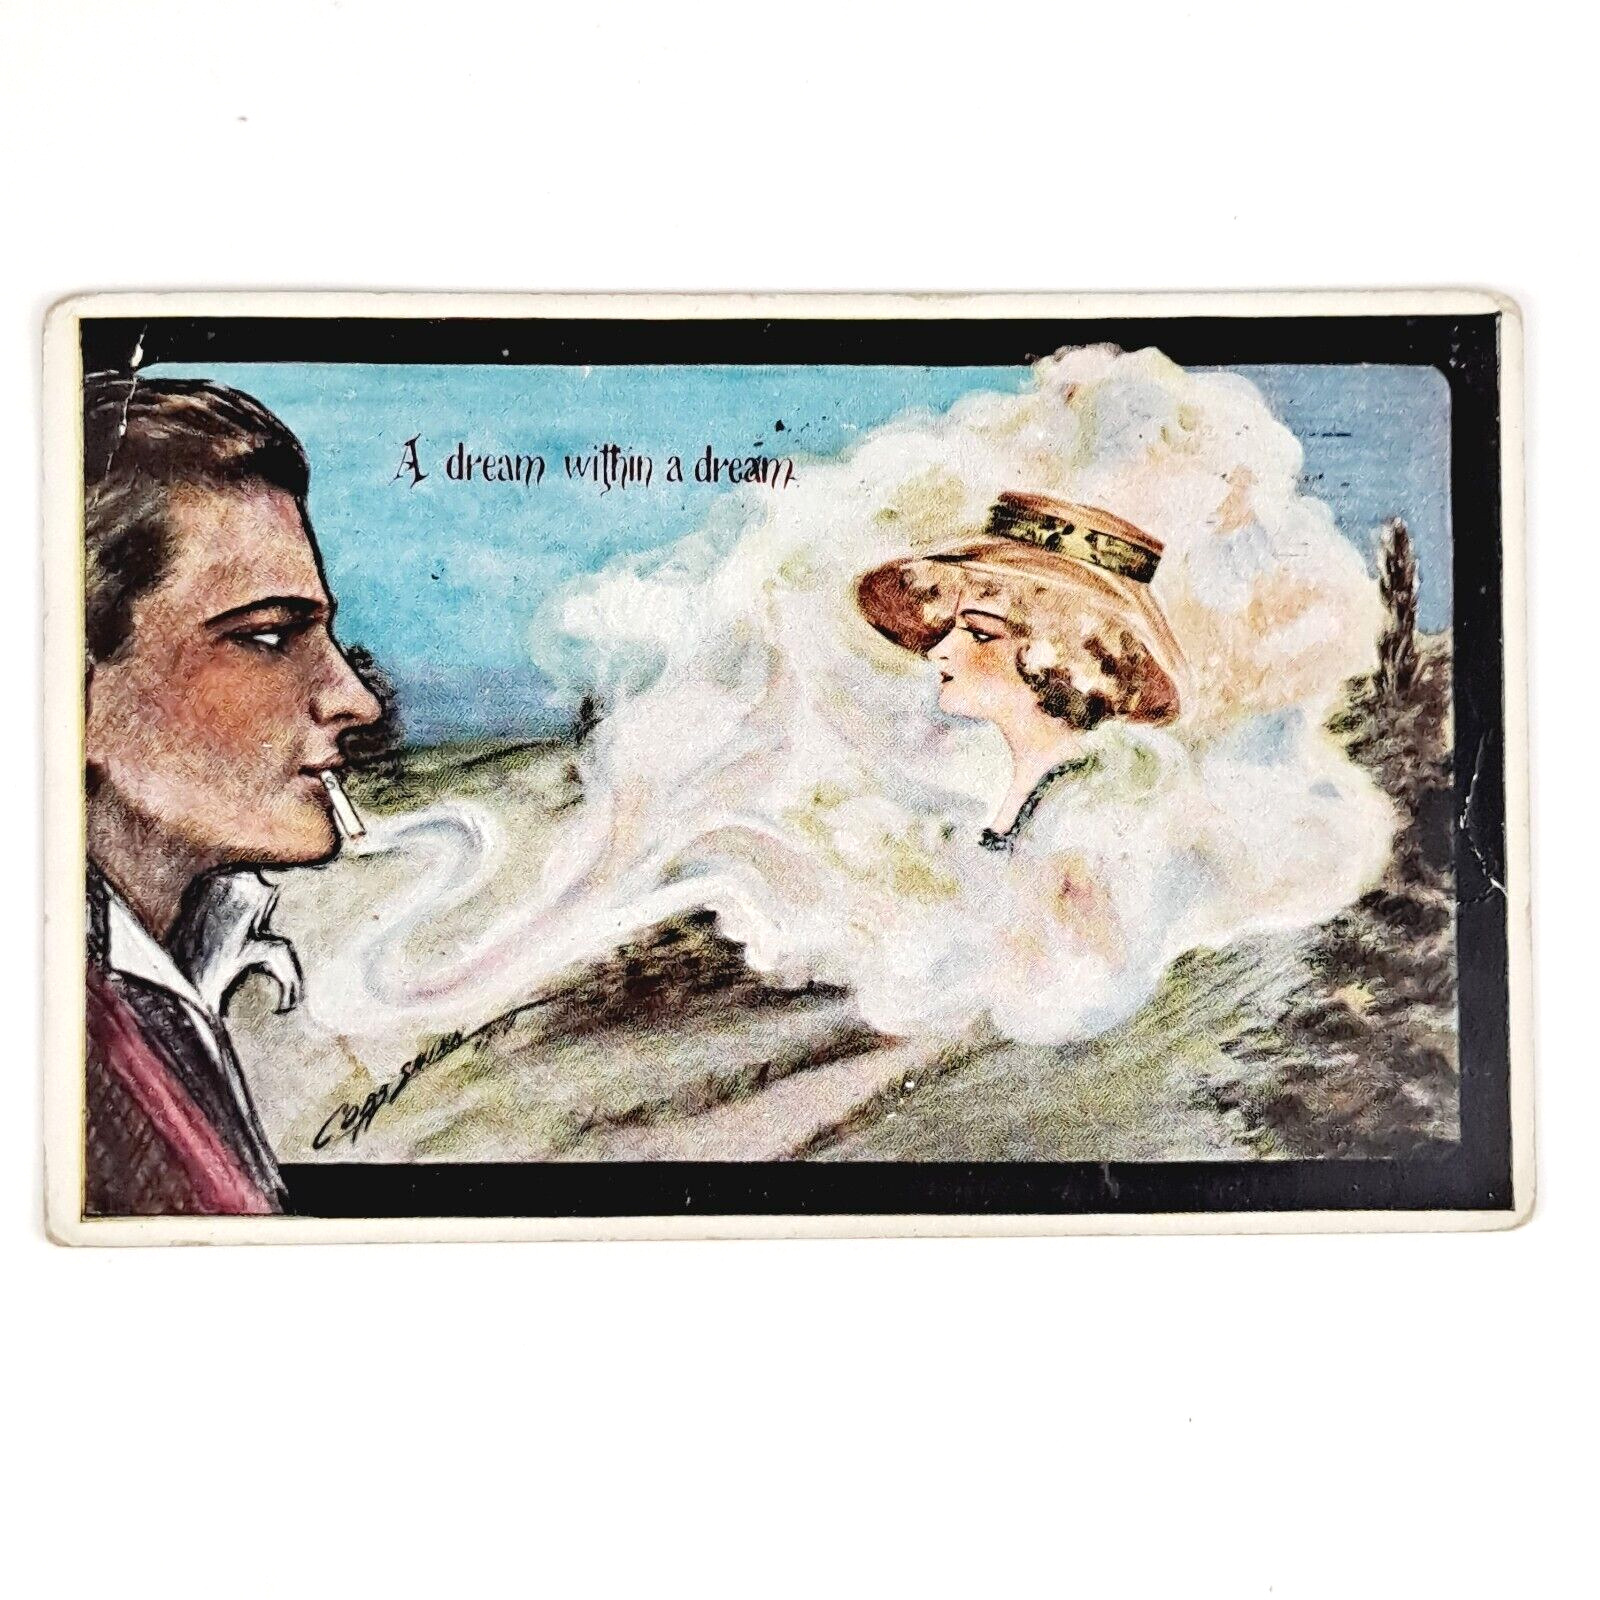 ANTIQUE 1910 DB COBB SHINN POST CARD DREAM WITHIN A DREAM LITHO POSTCARD POSTED